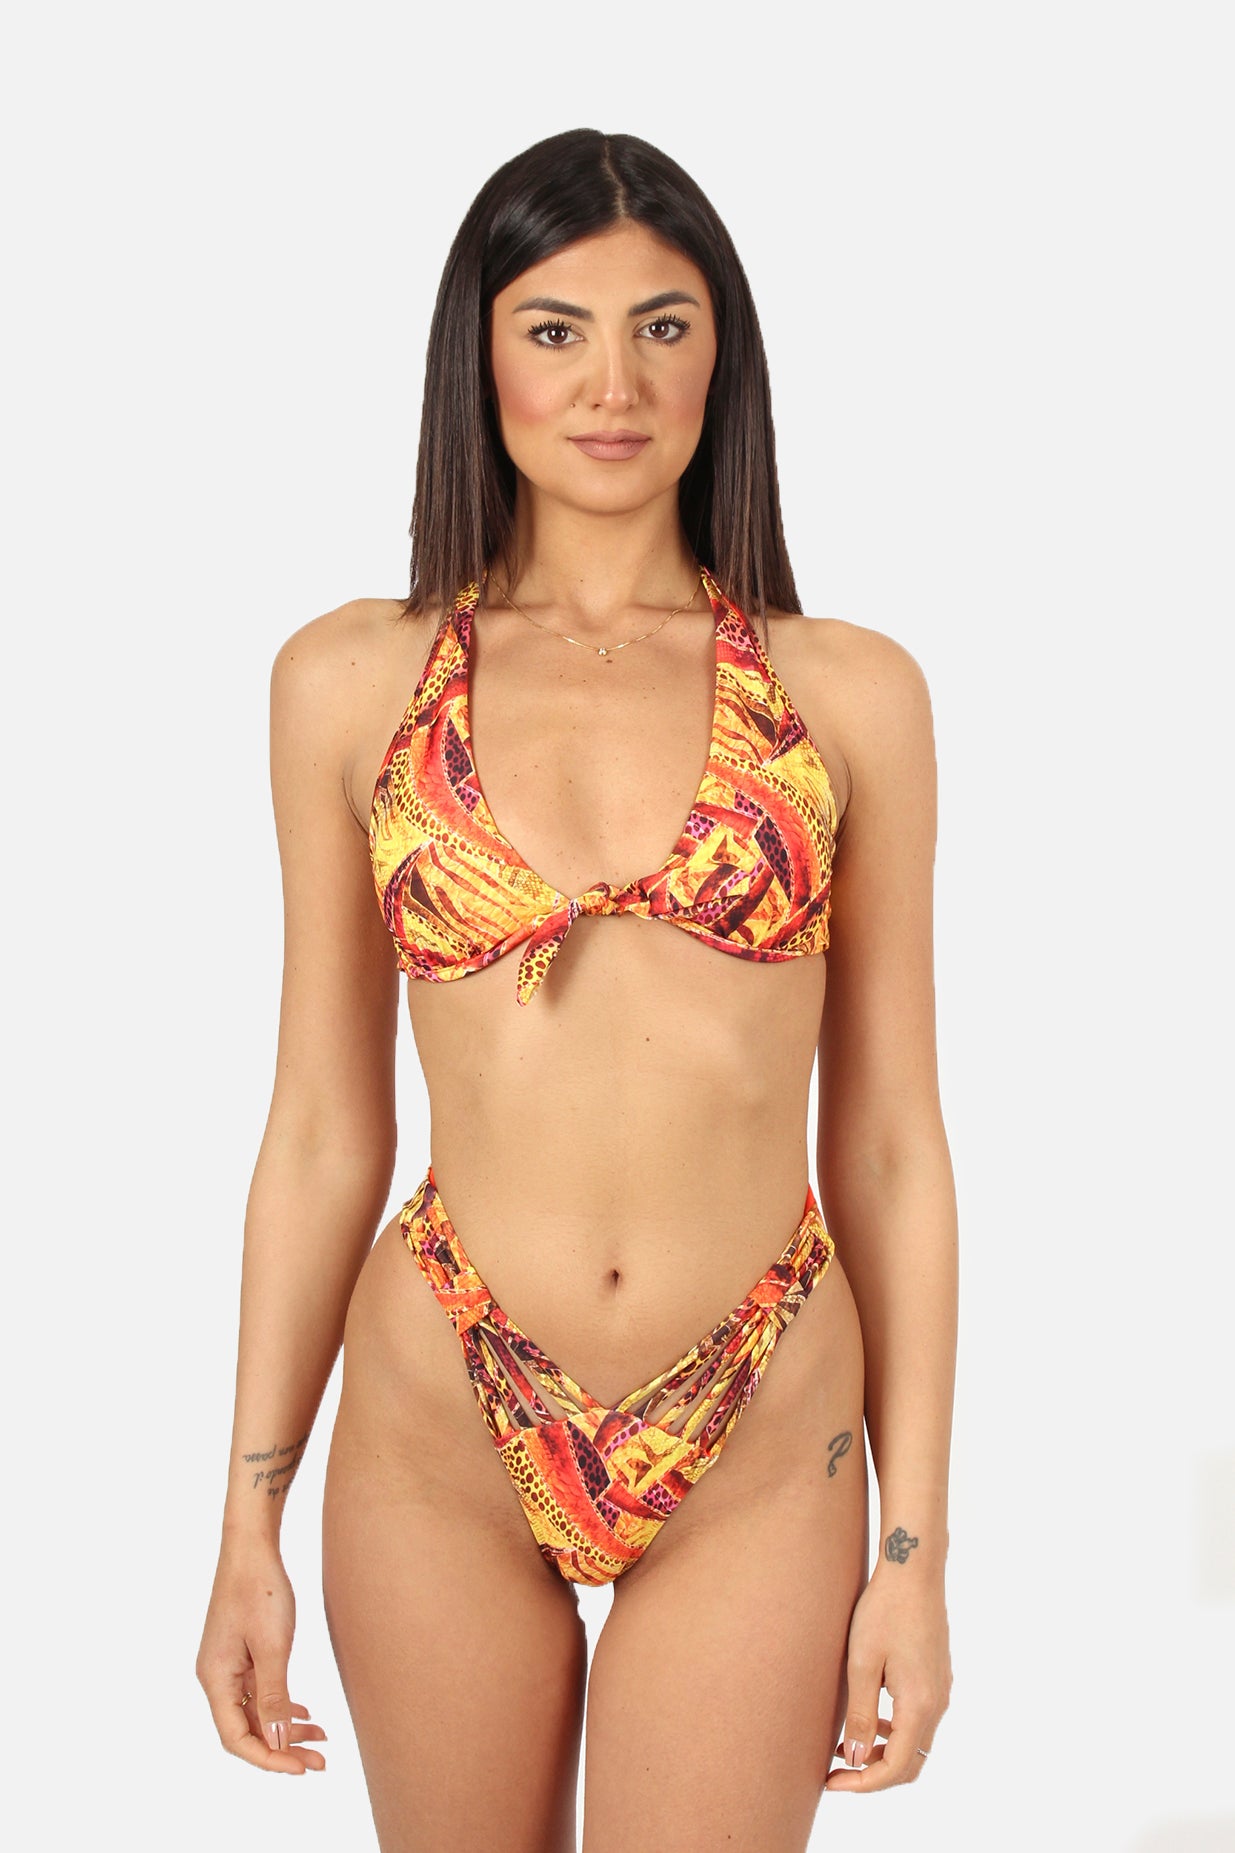 patterned bikini